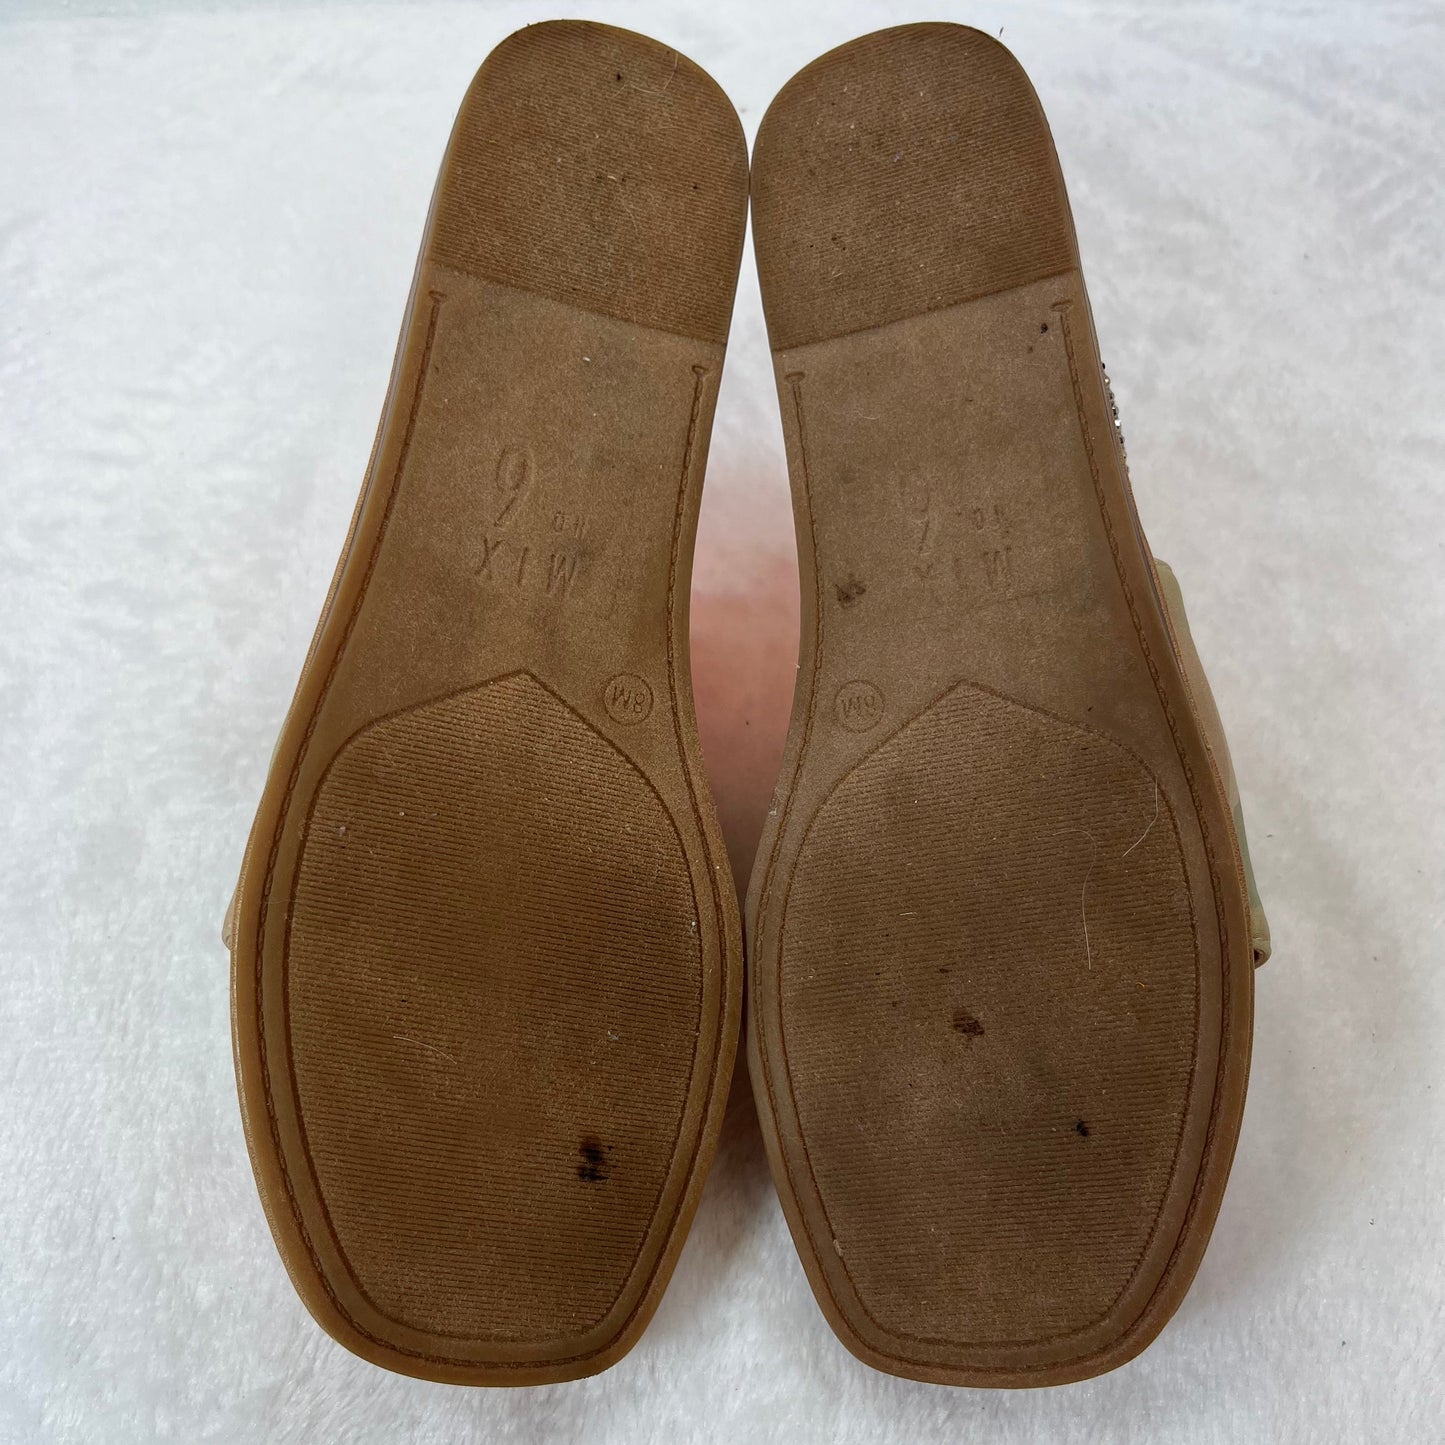 Sandals Flip Flops By Mix No 6  Size: 8